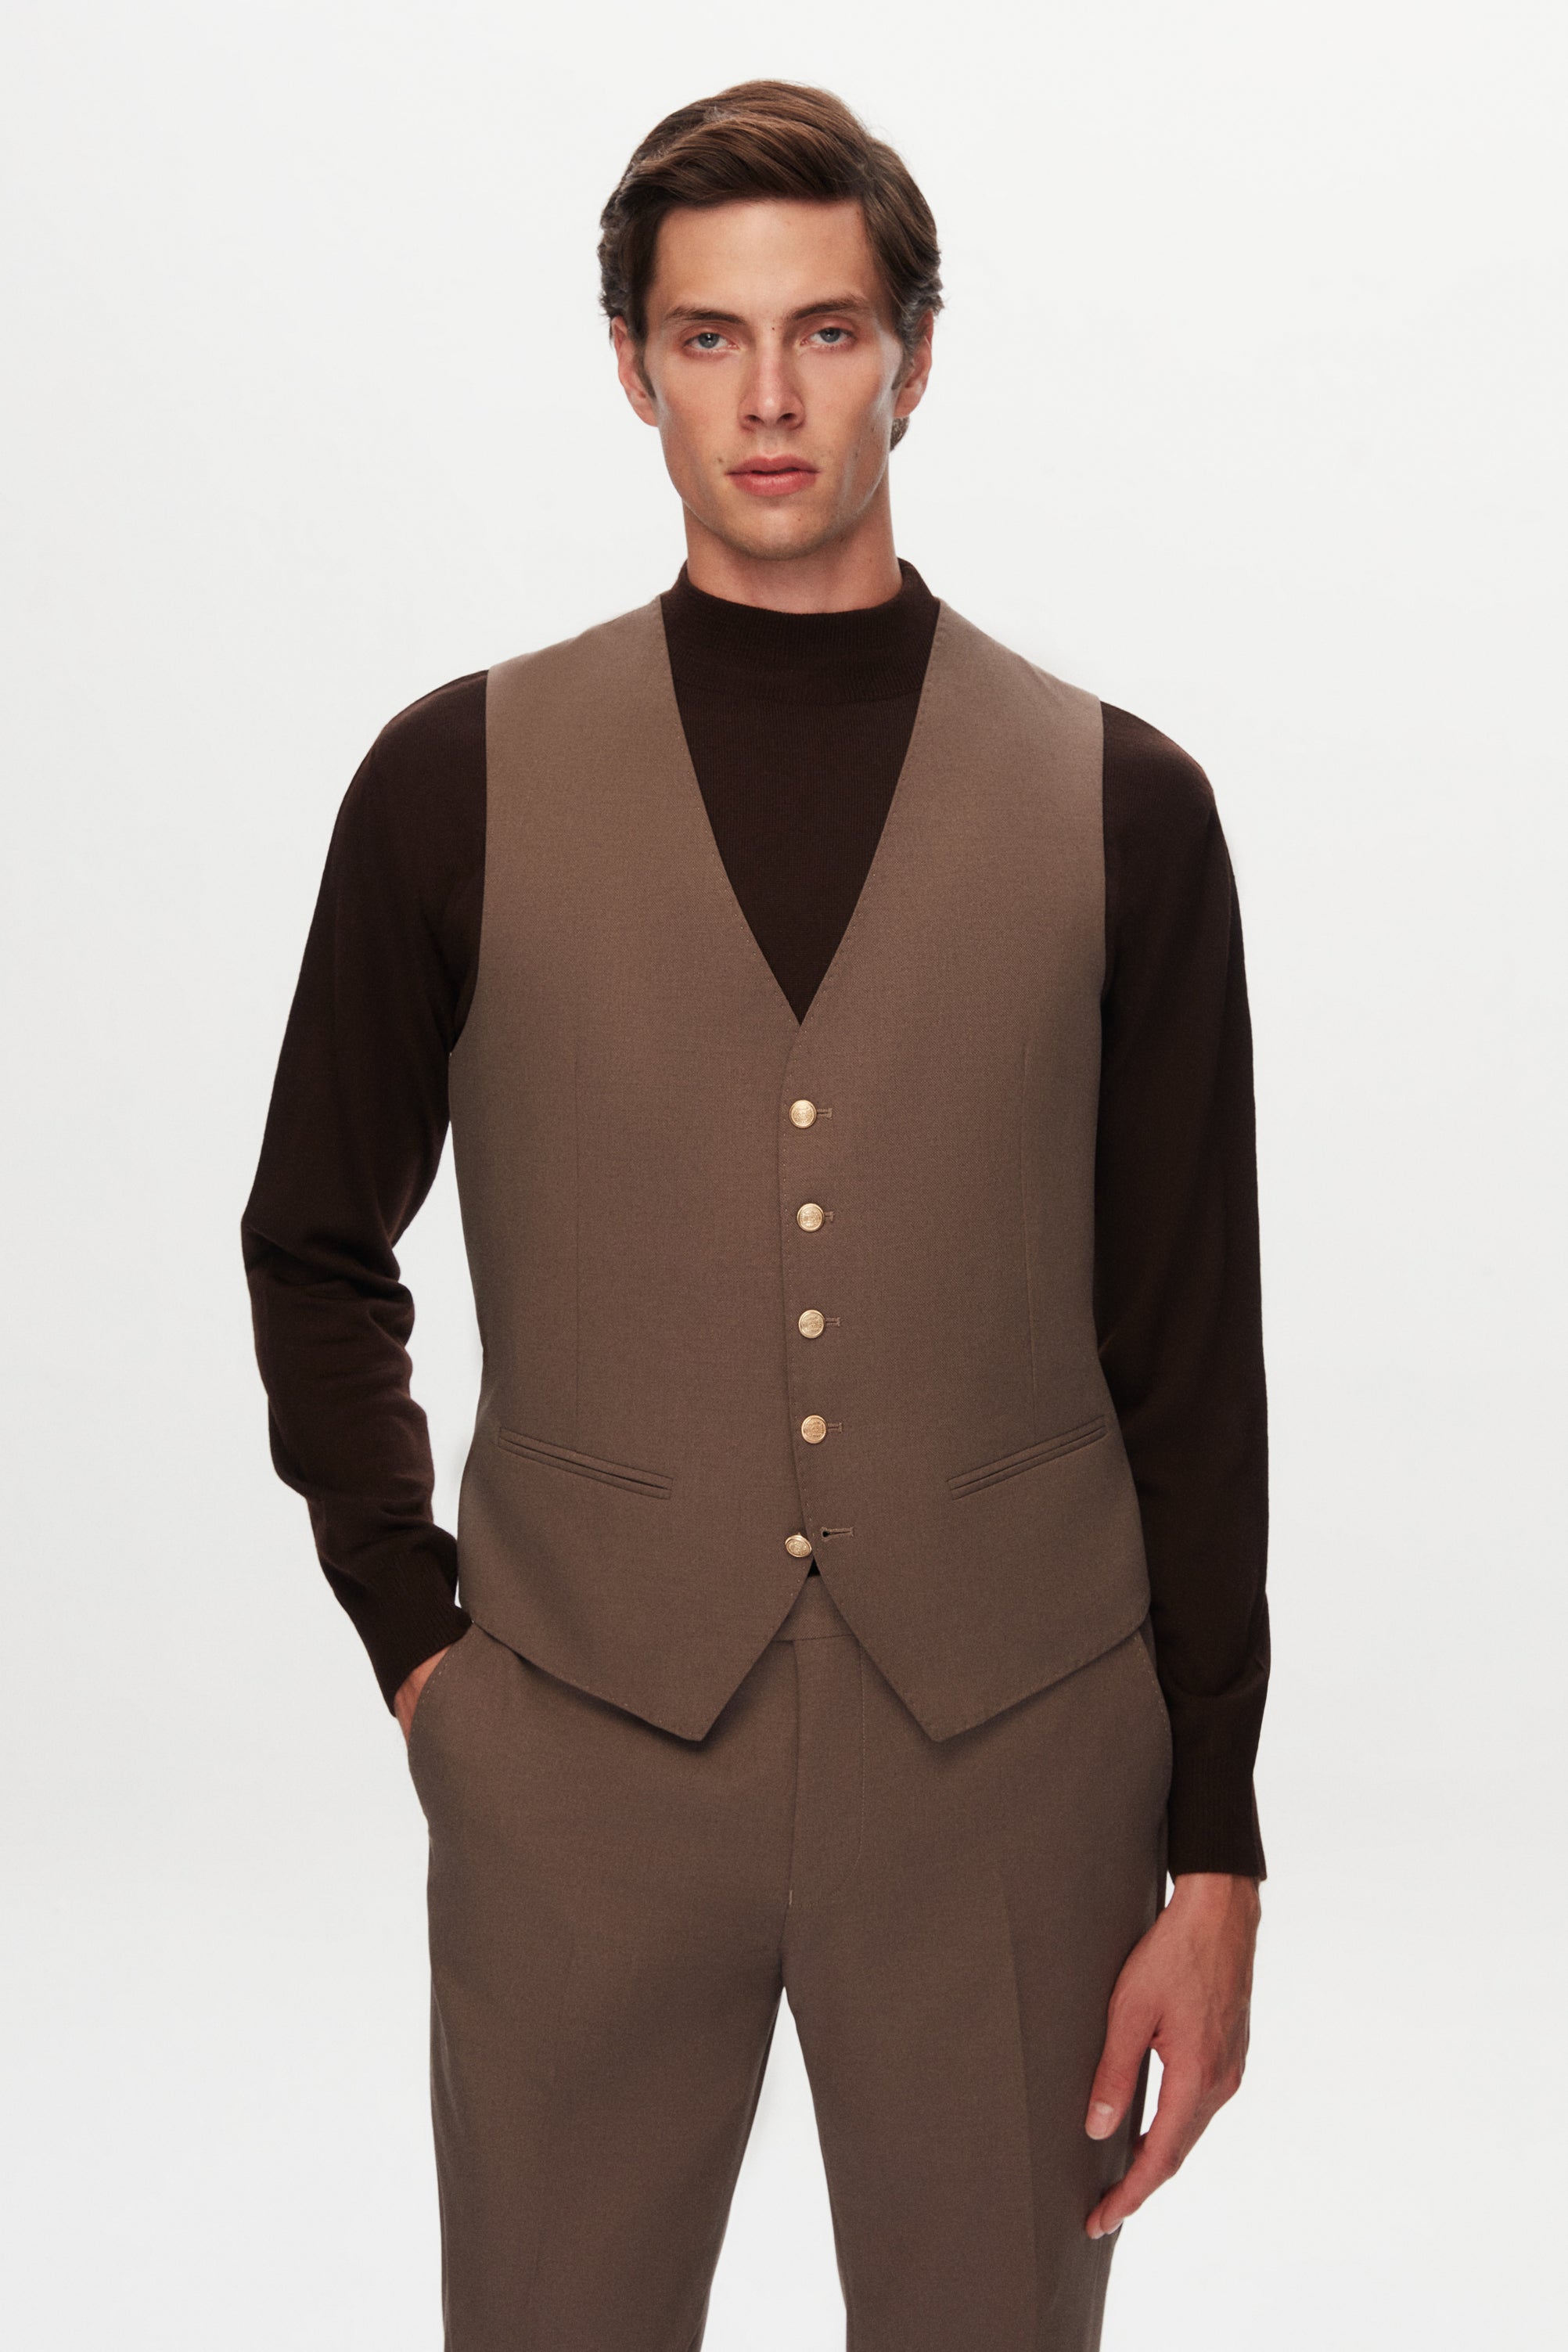 D's Dmat's 3-Piece Stylish Brown Suit